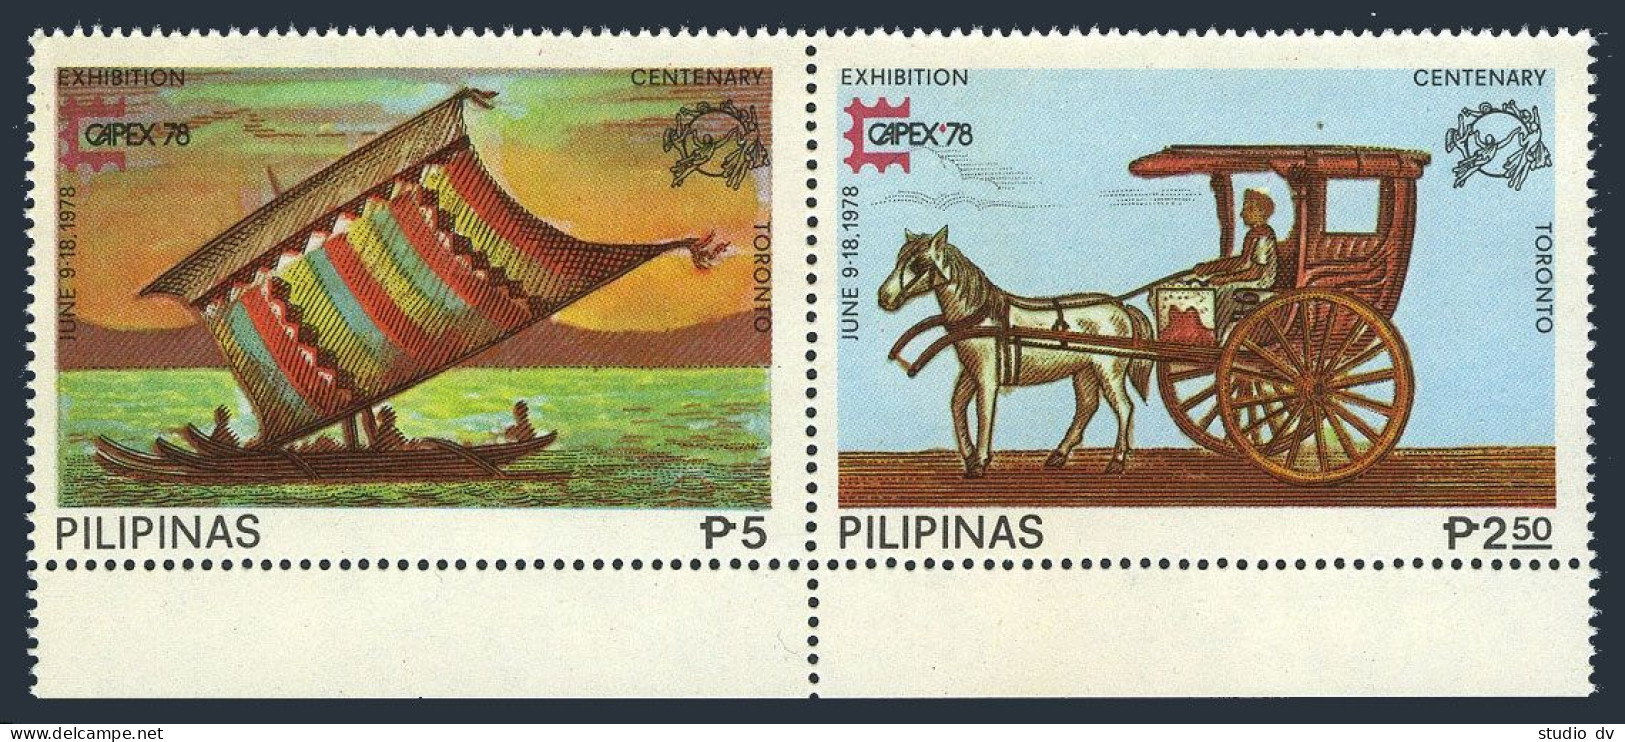 Philippines 1348-1350,1350e Imperf.MNH. CAPEX-1978,UPU,Moro Vinta,Mail Cart,Ship - Filippijnen